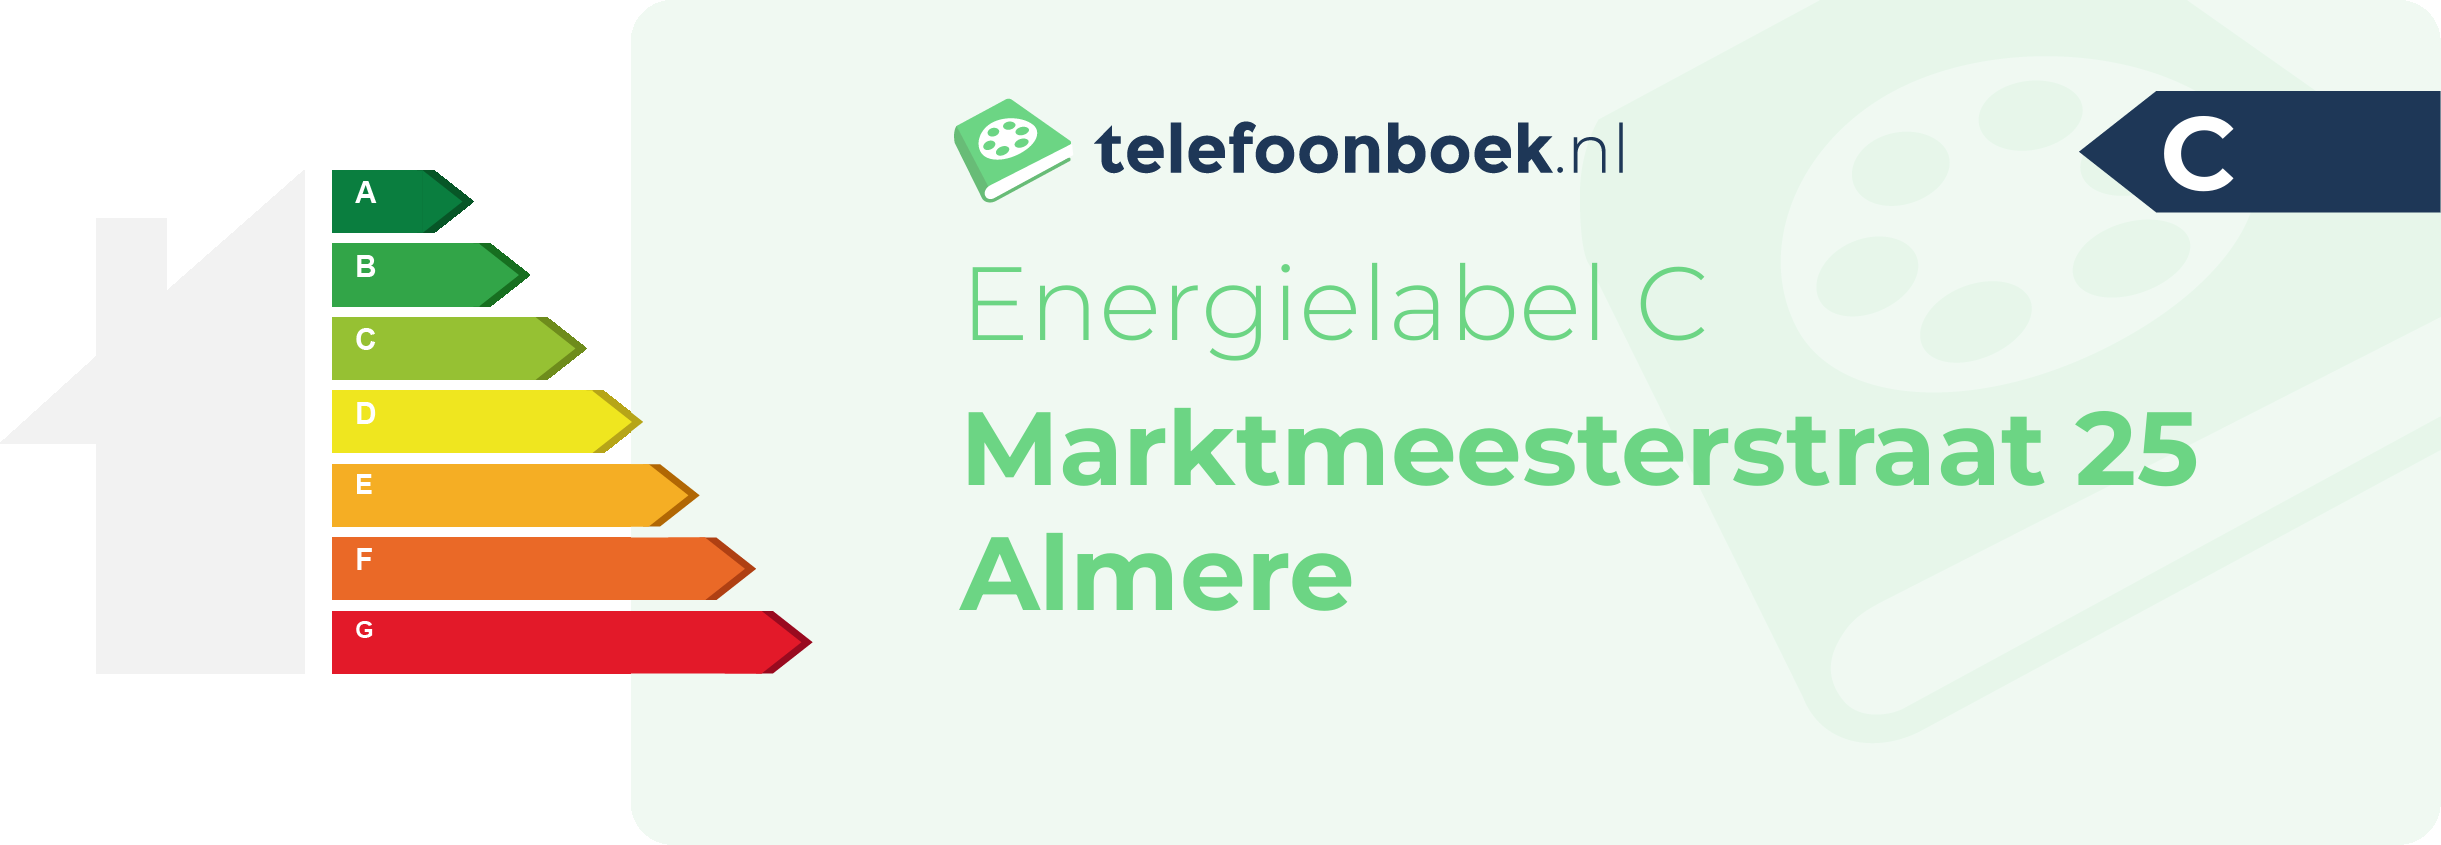 Energielabel Marktmeesterstraat 25 Almere